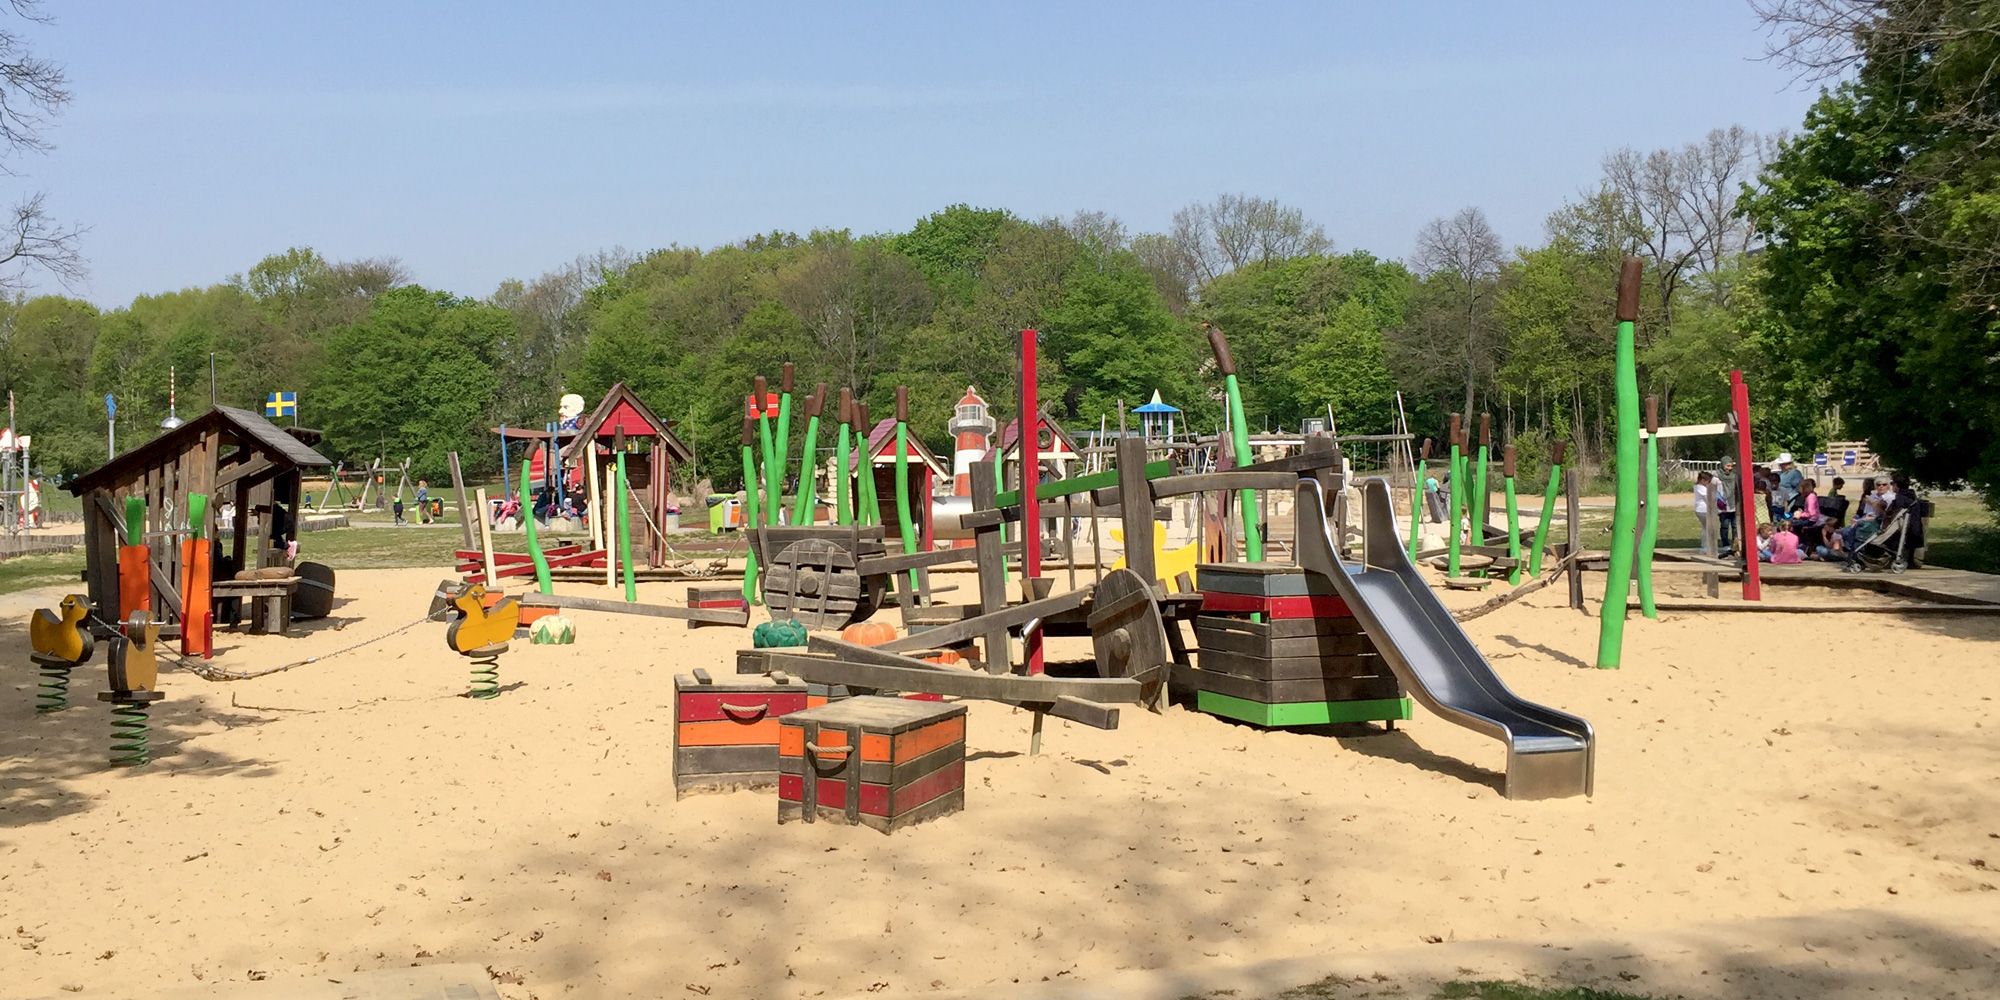 Kinderspielplatz im Park am Buschkrug